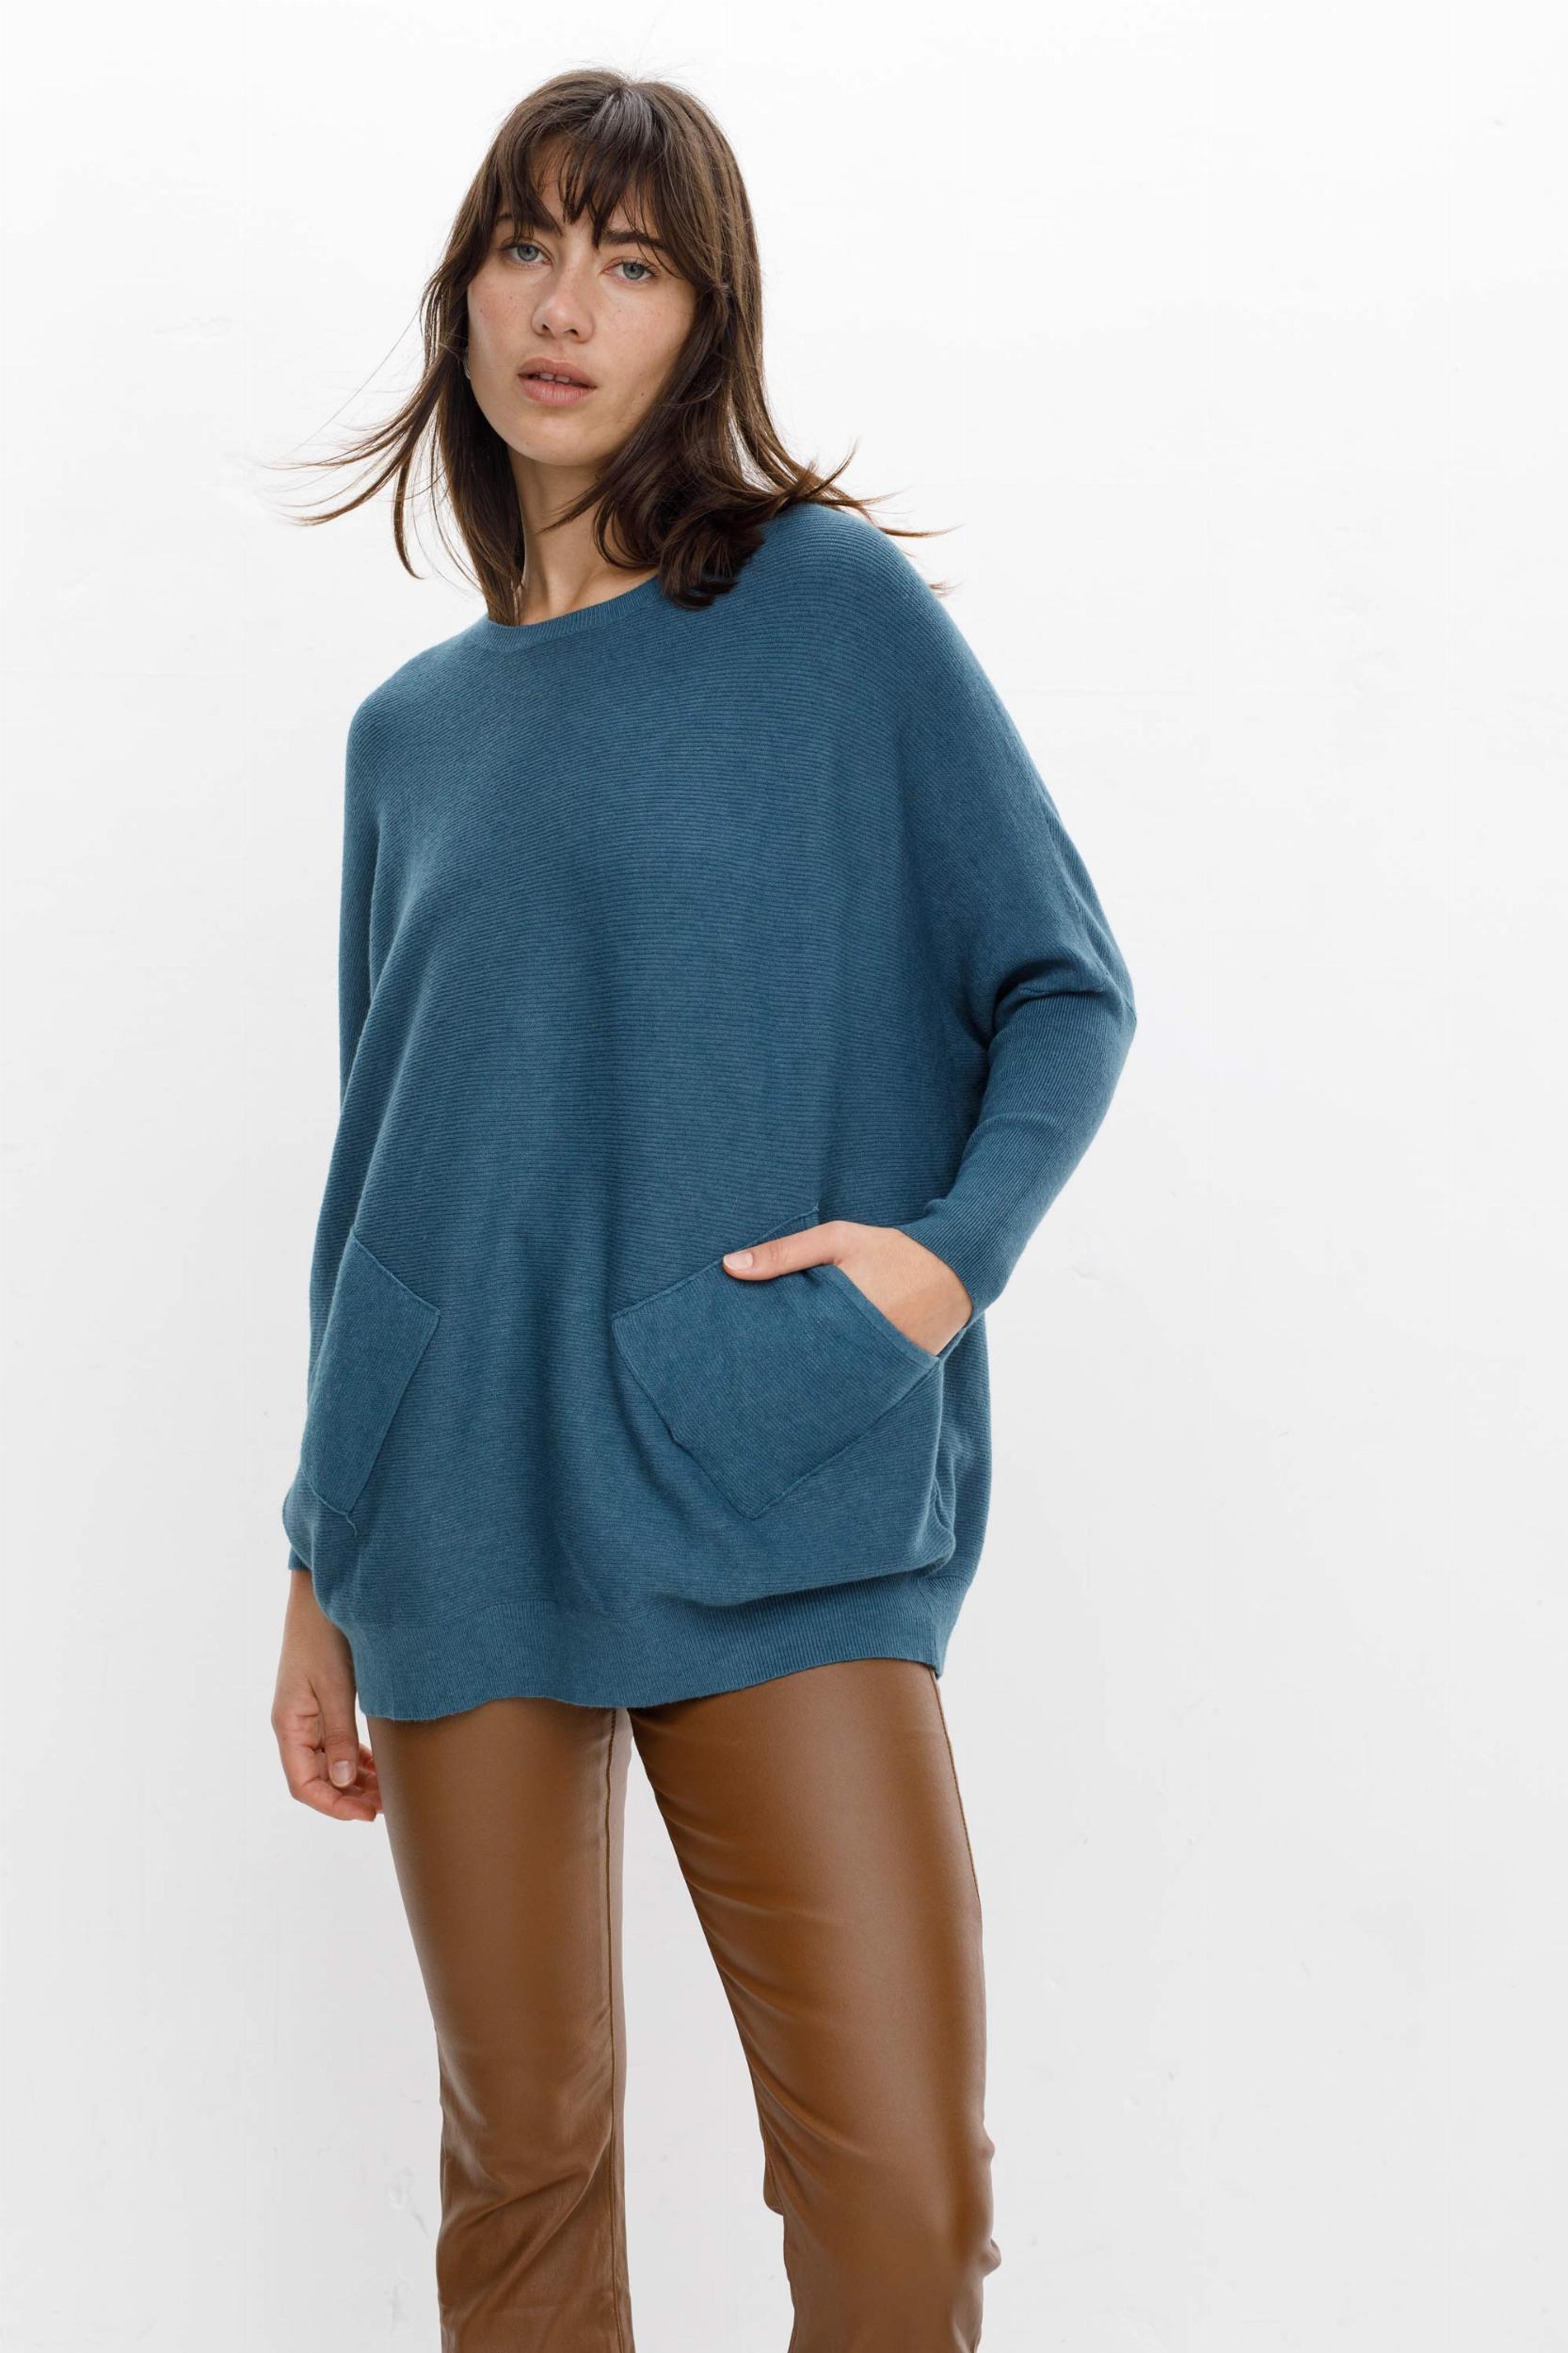 Sweater Narcizo azul piedra talle unico